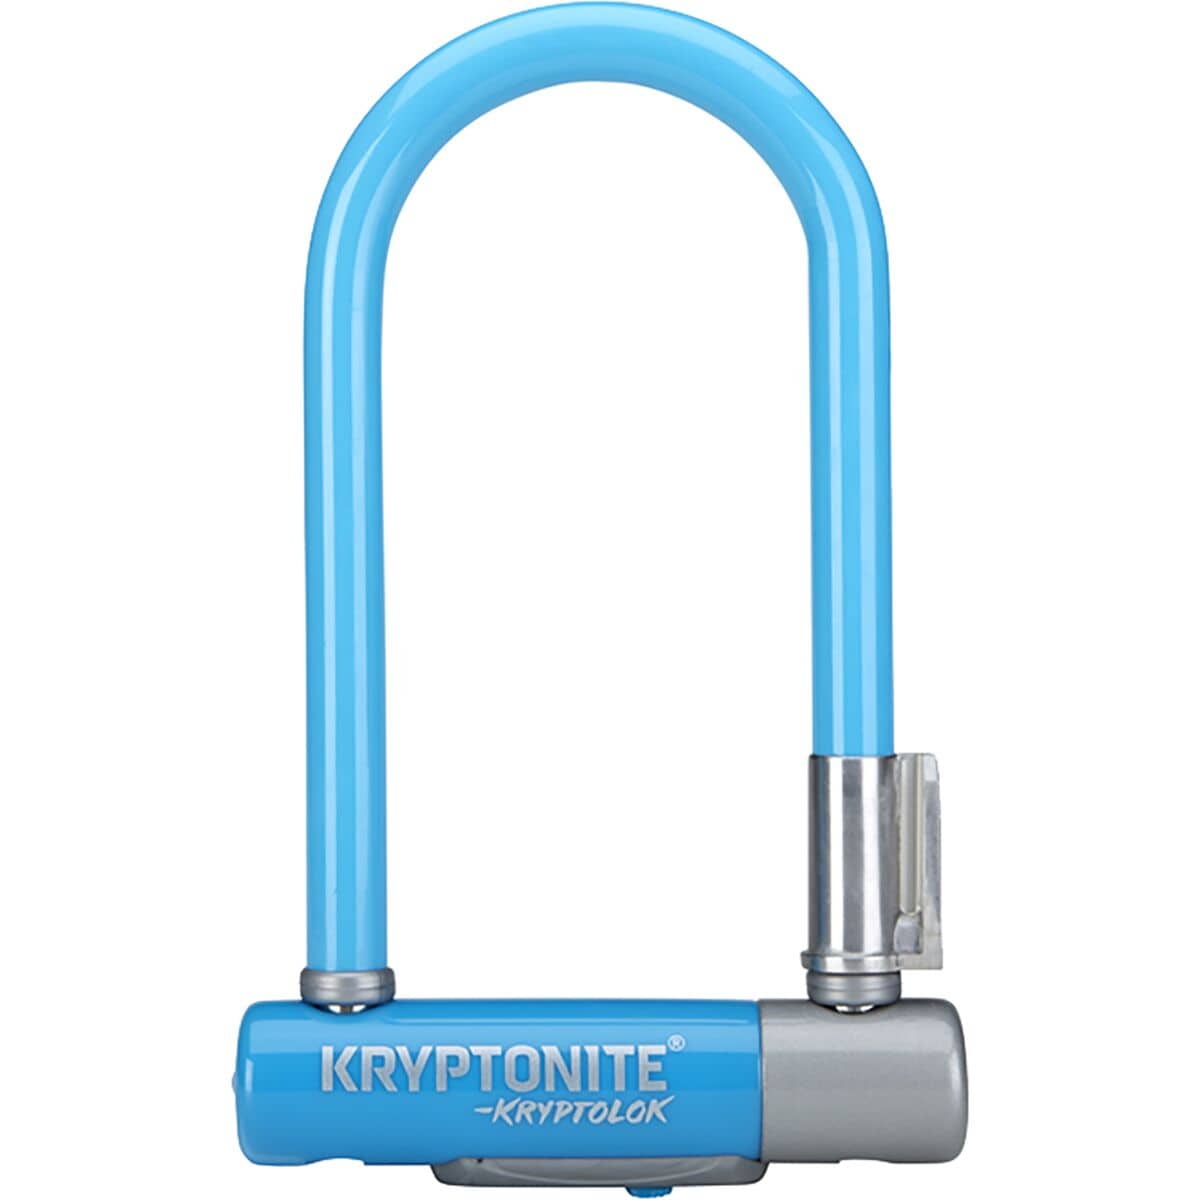 Kryptonite KryptoLok Series 2 Mini-7 U-Lock